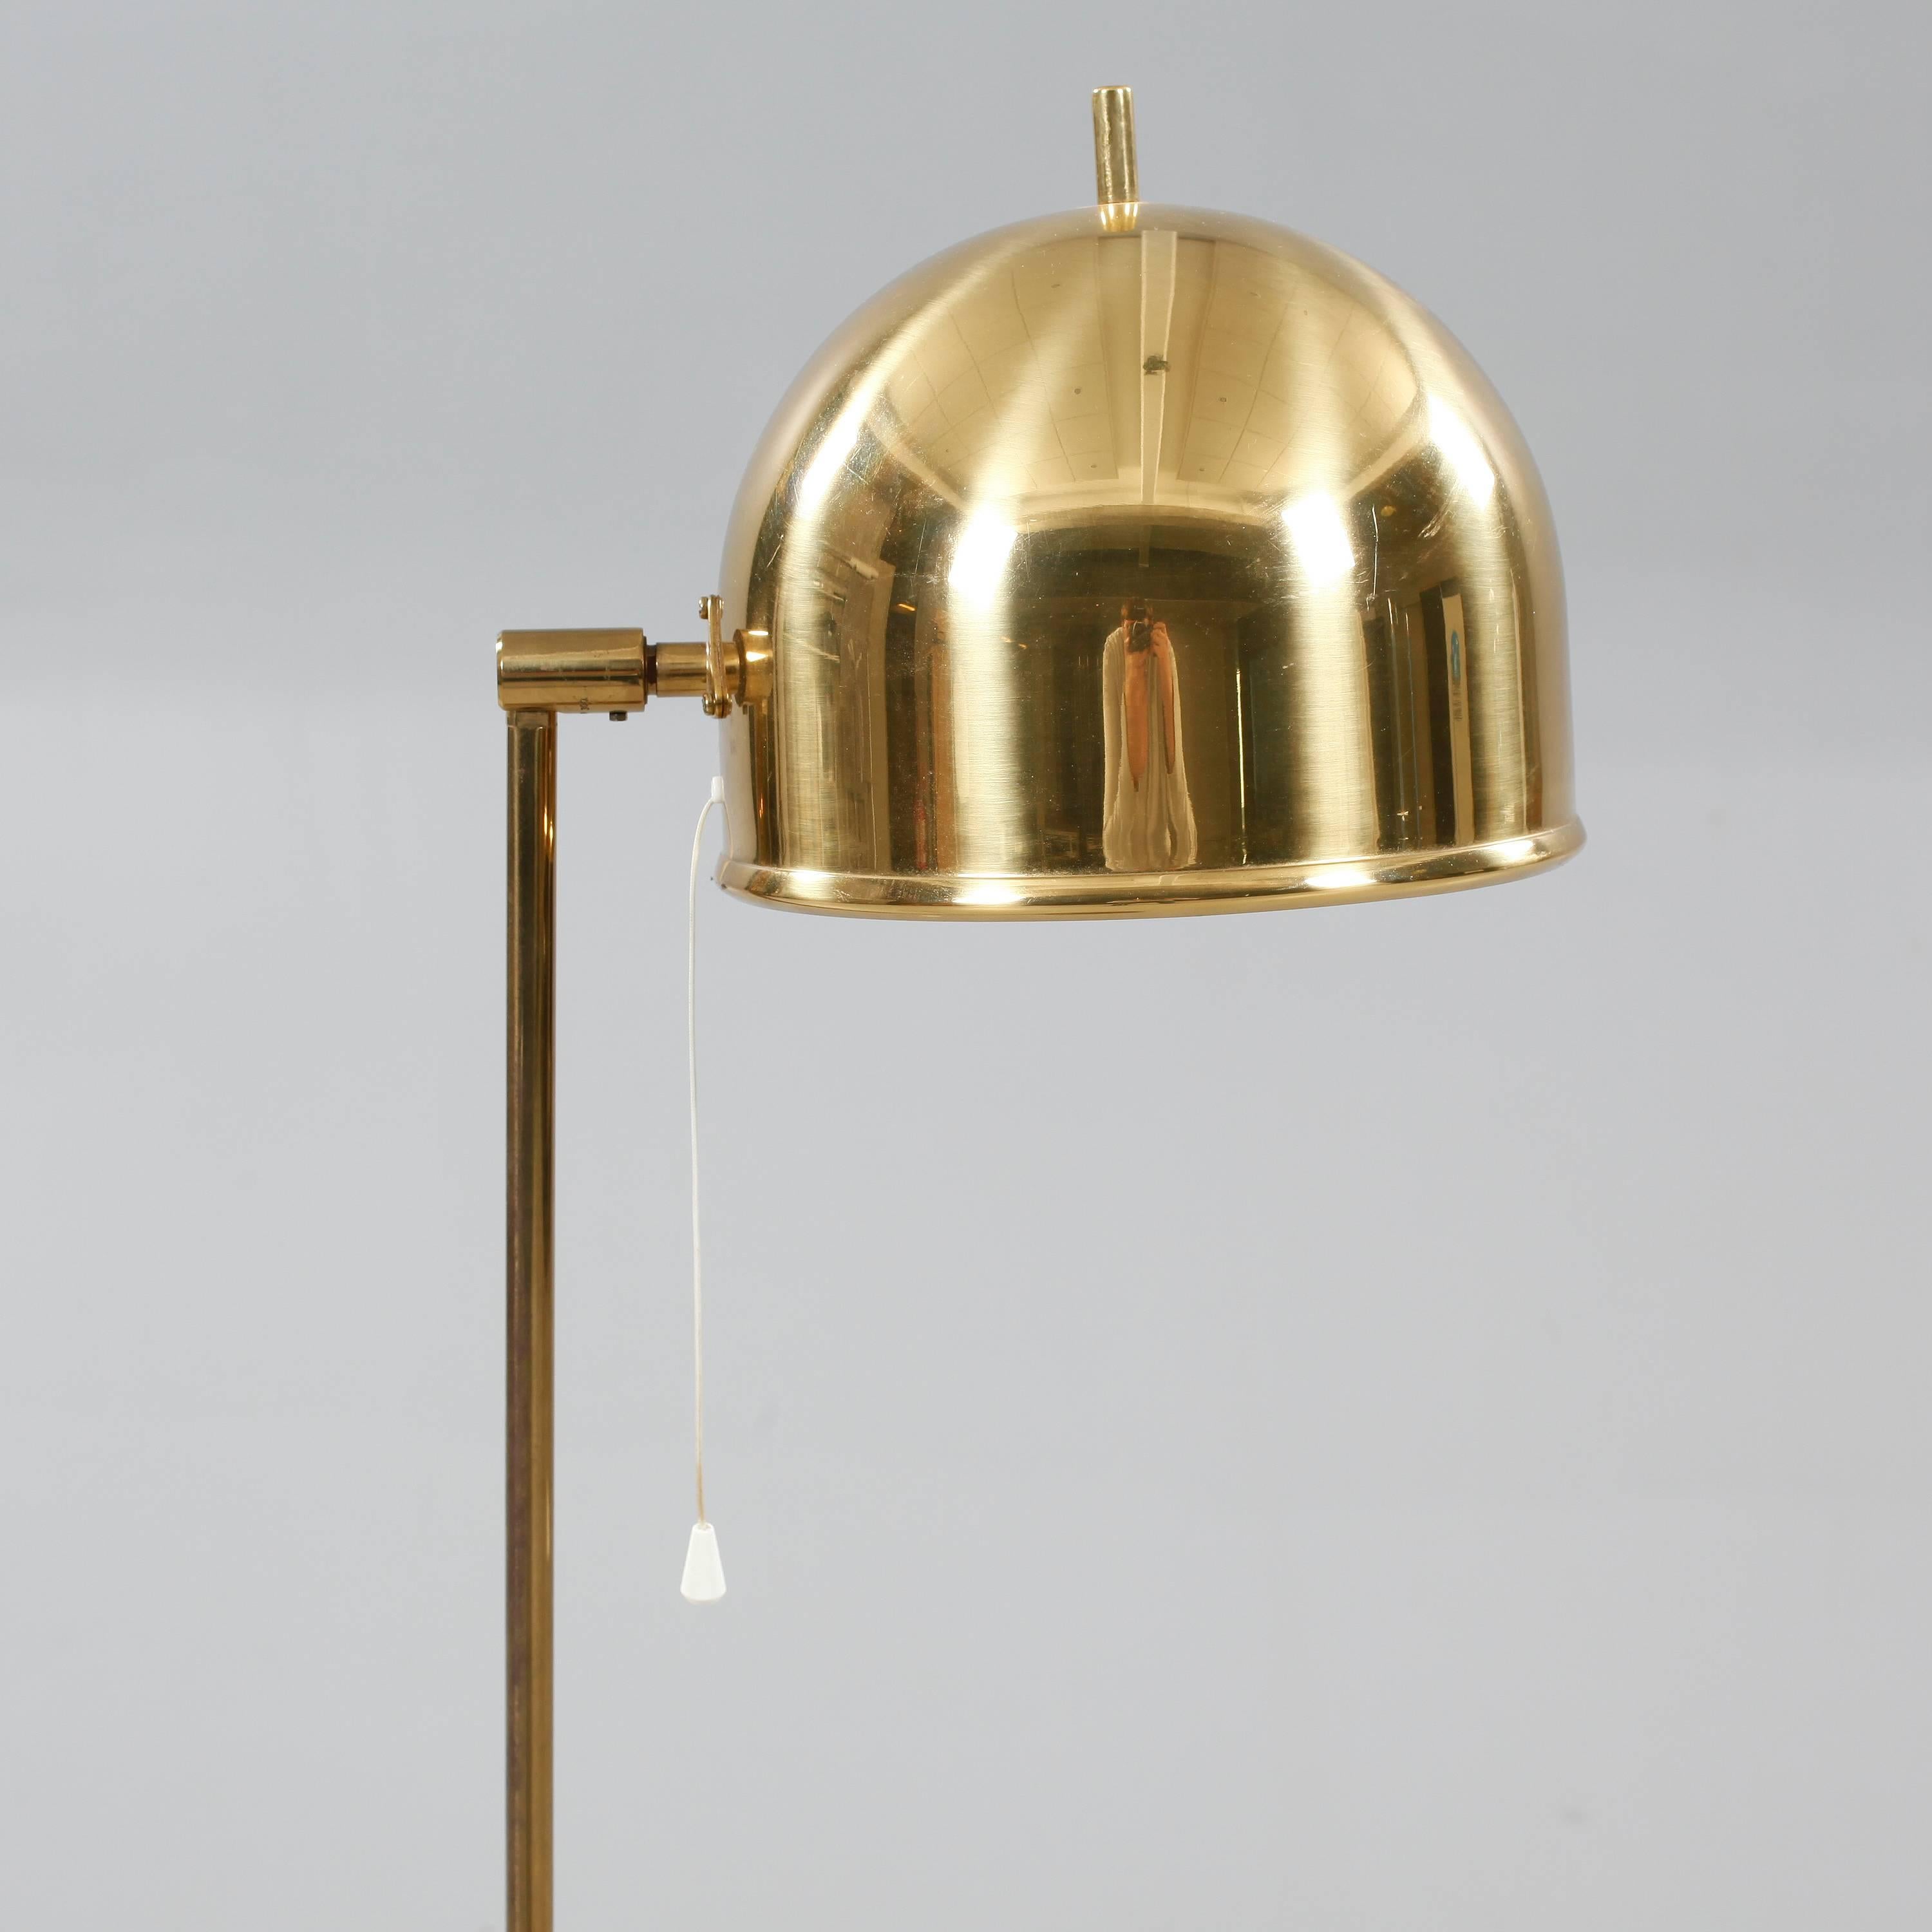 Modern Floor Lamp by Bergboms, Sweden 1950.
Brass,
Retains original wiring.